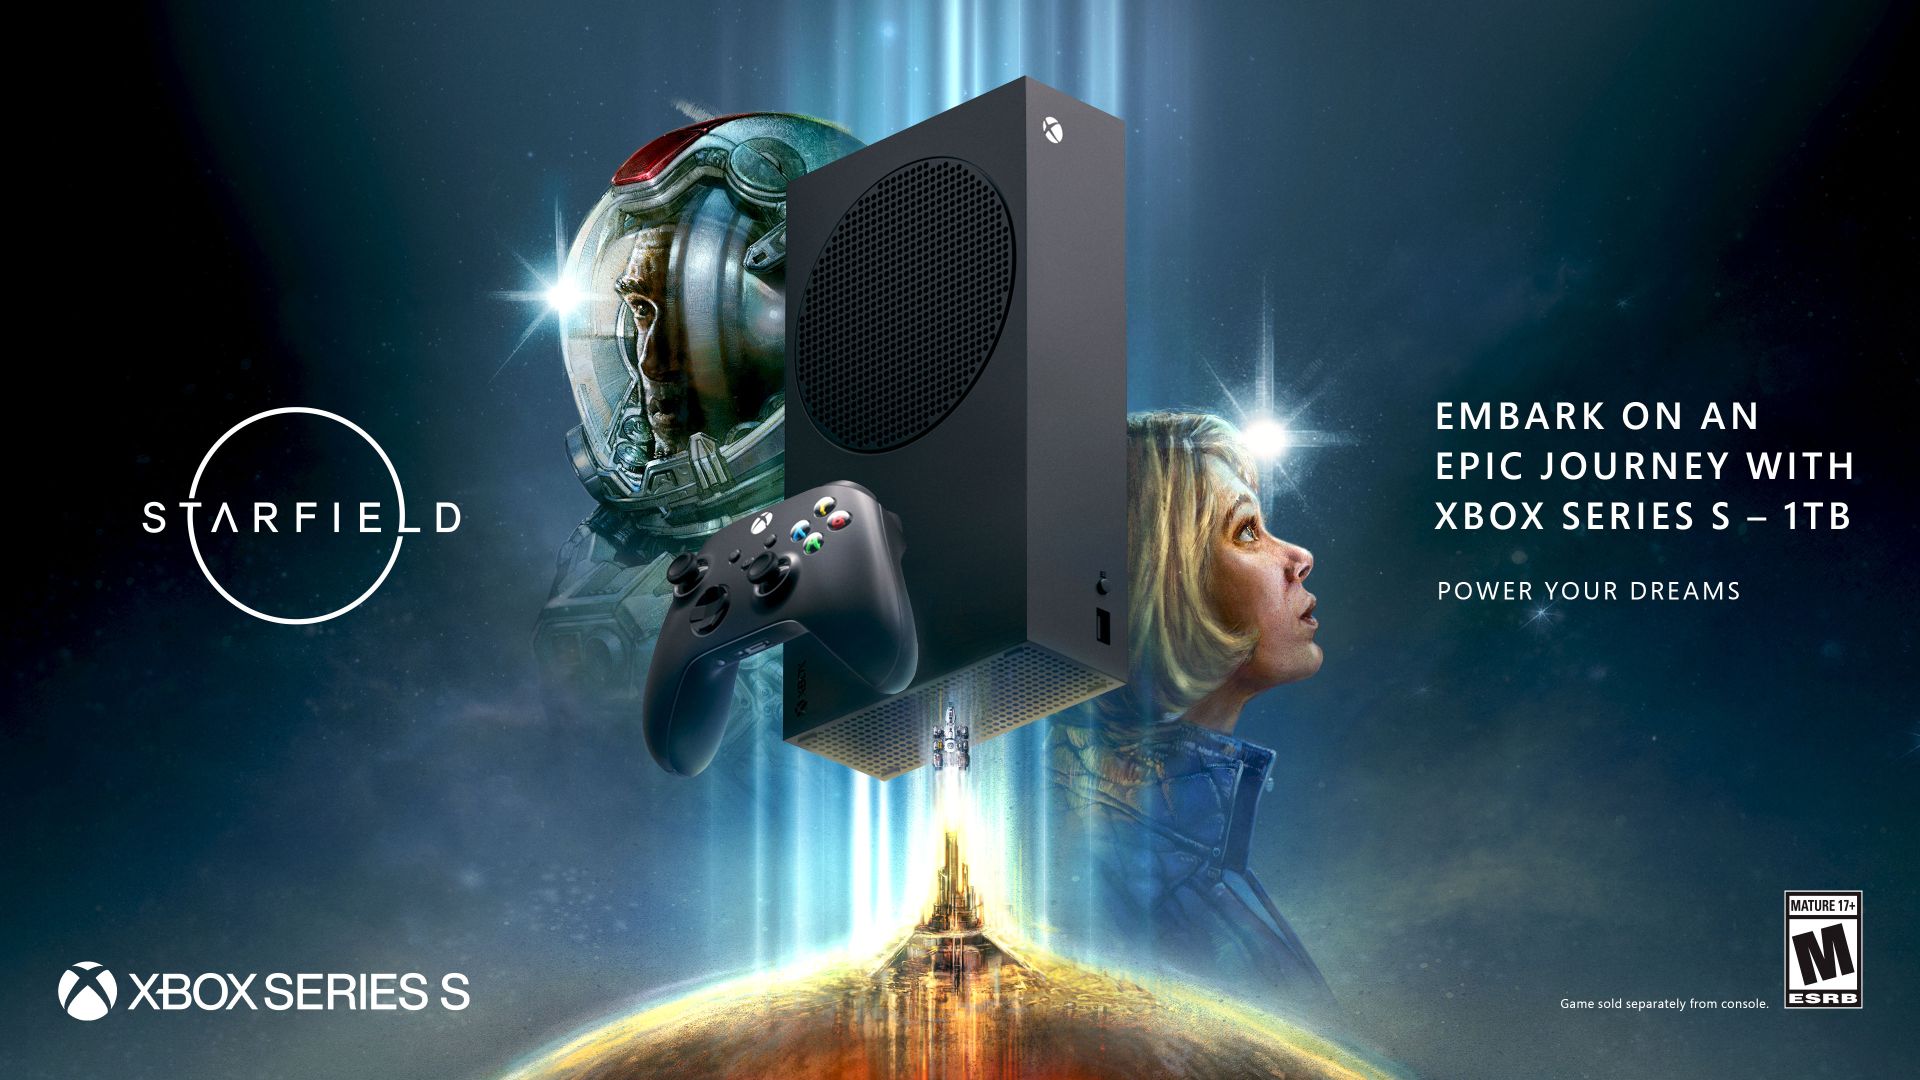 ビデオの対象『Starfield』と Xbox Series S 1TB (ブラック) の登場で大充実の 9 月がスタート